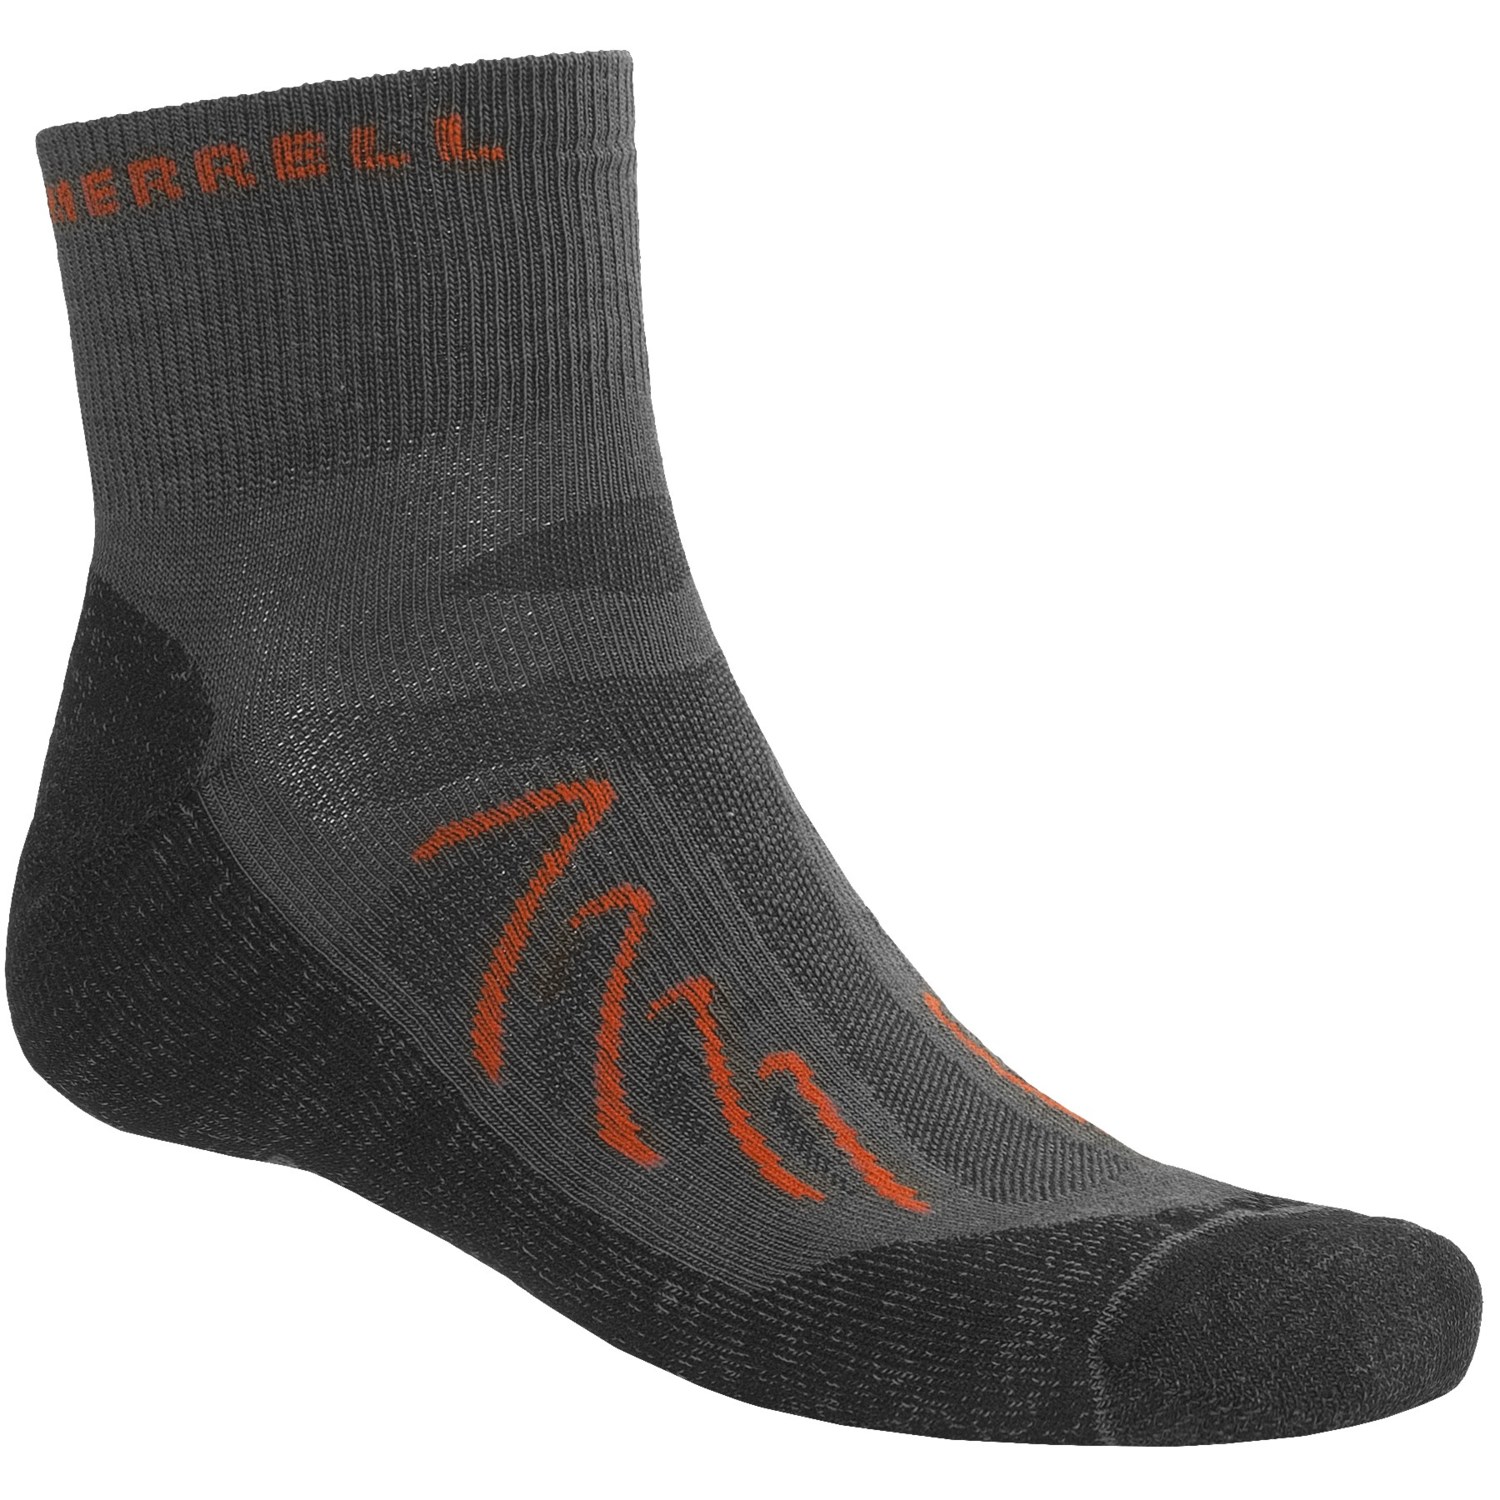 Merrell Chameleon Socks (For Men) 5631F - Save 36%